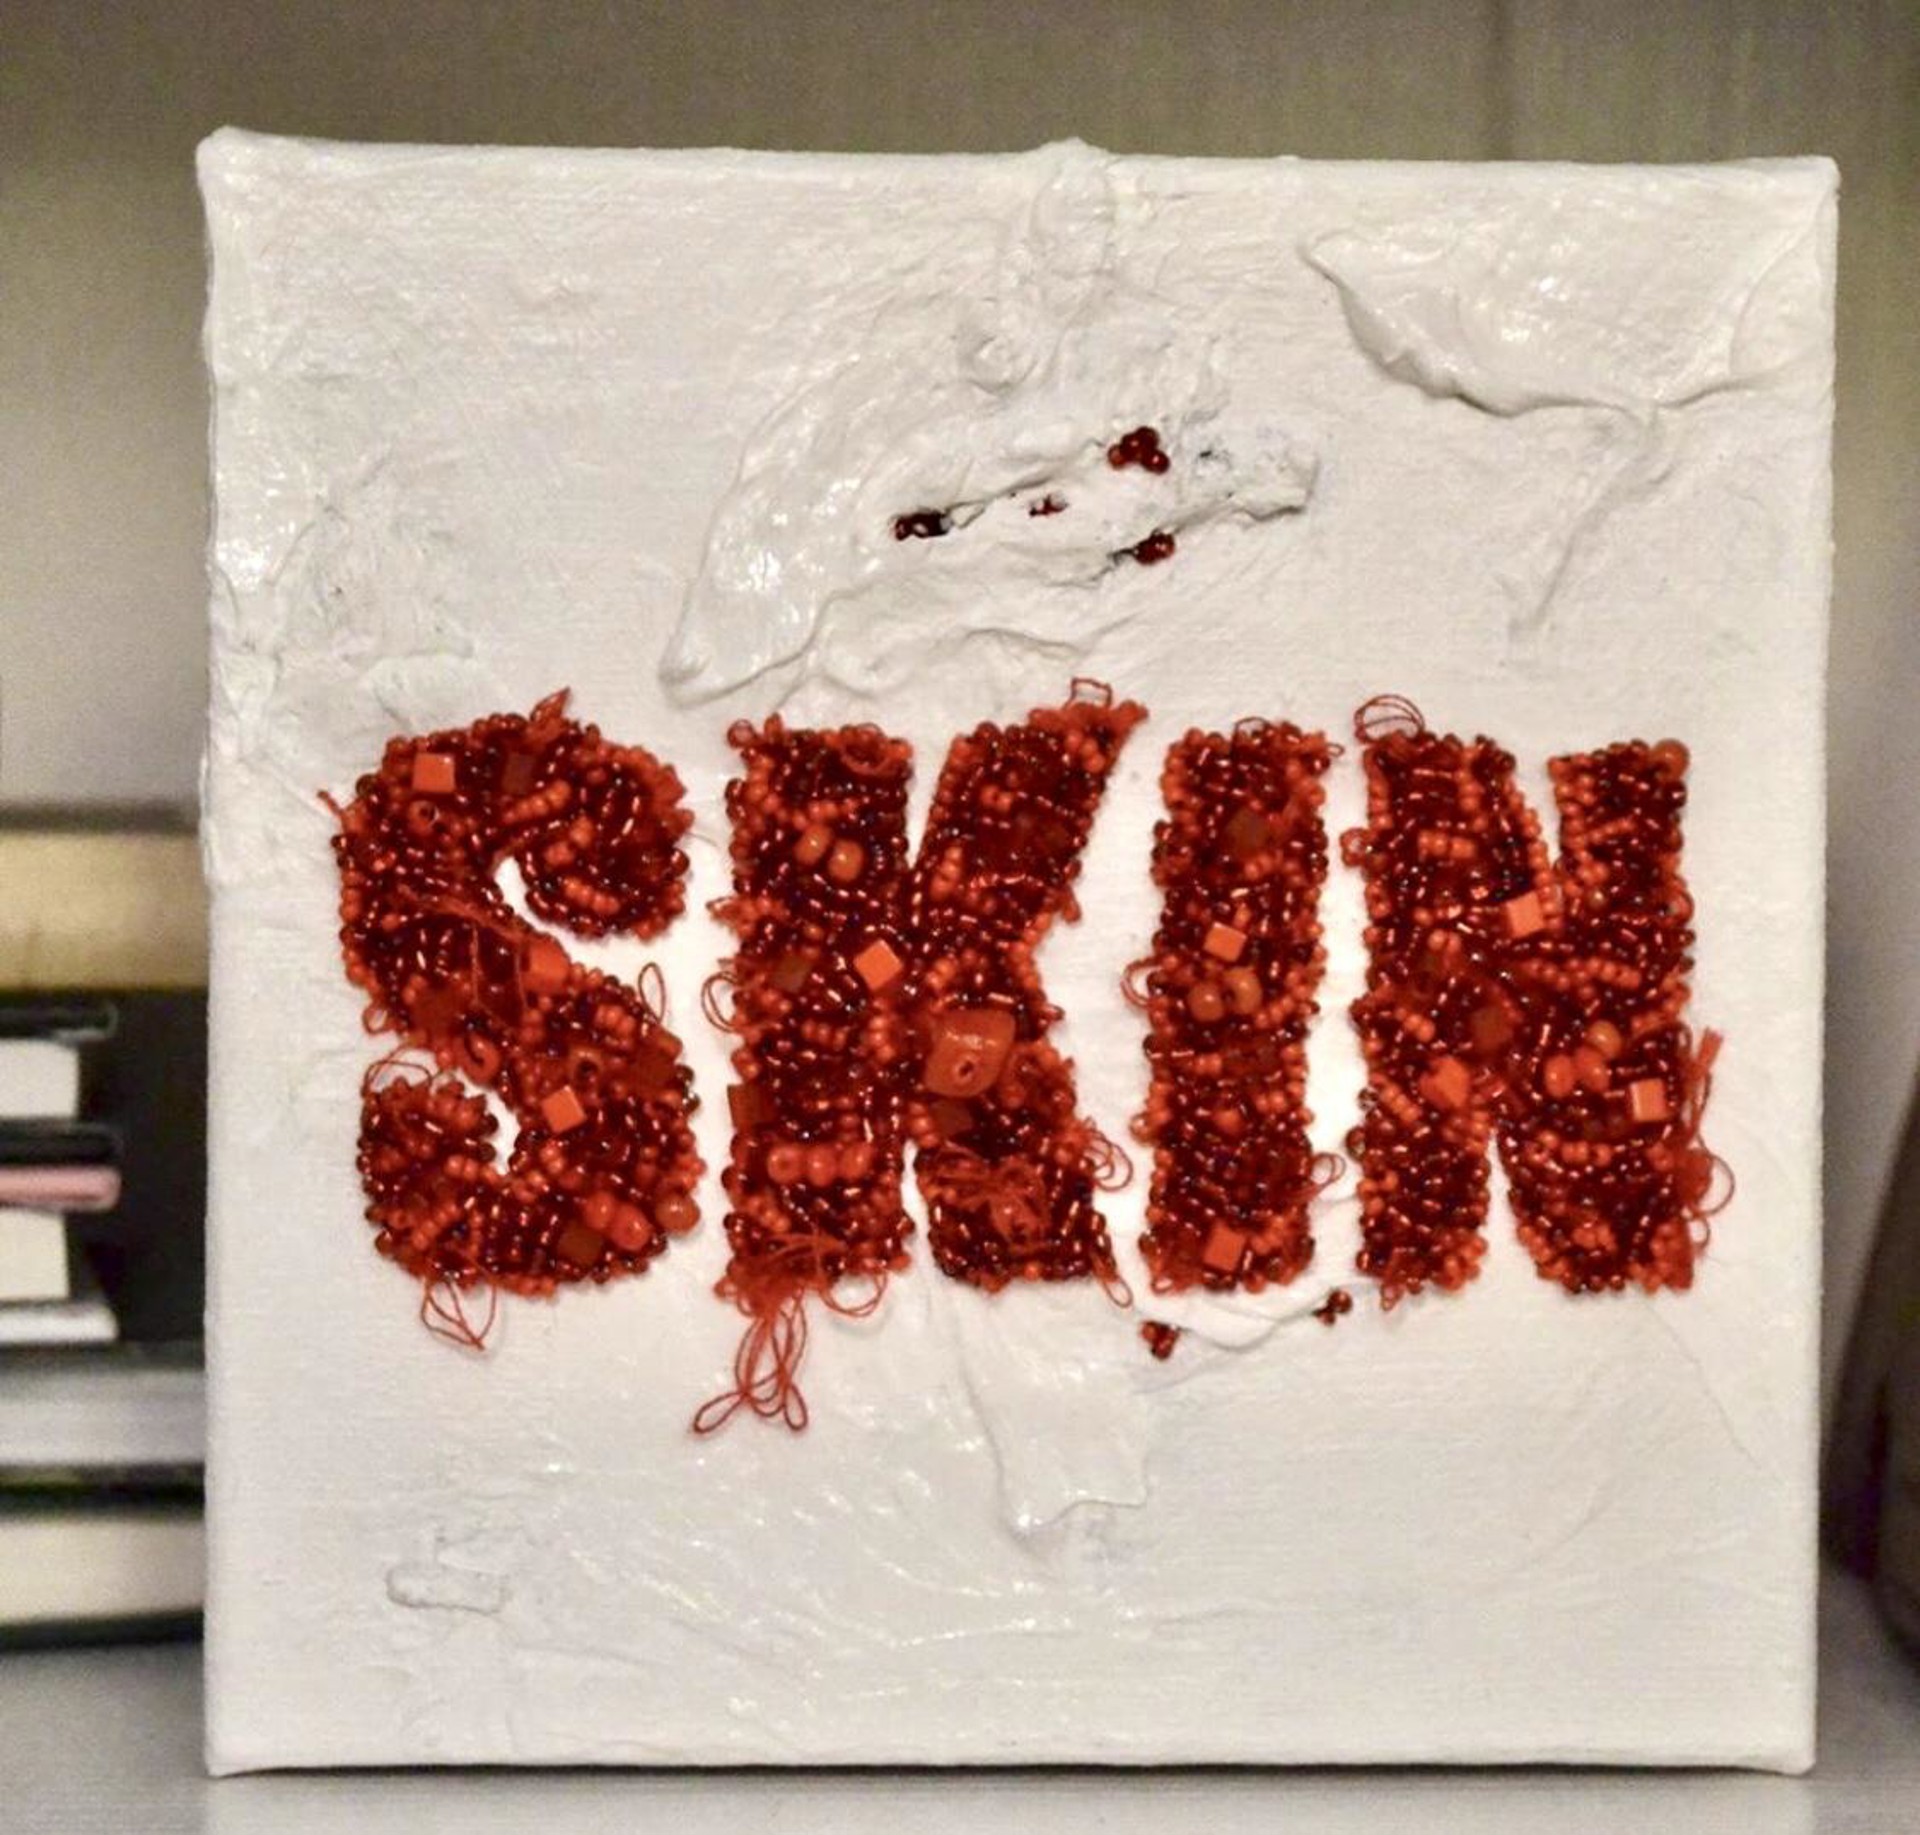 Skin by Kamryn Shawron